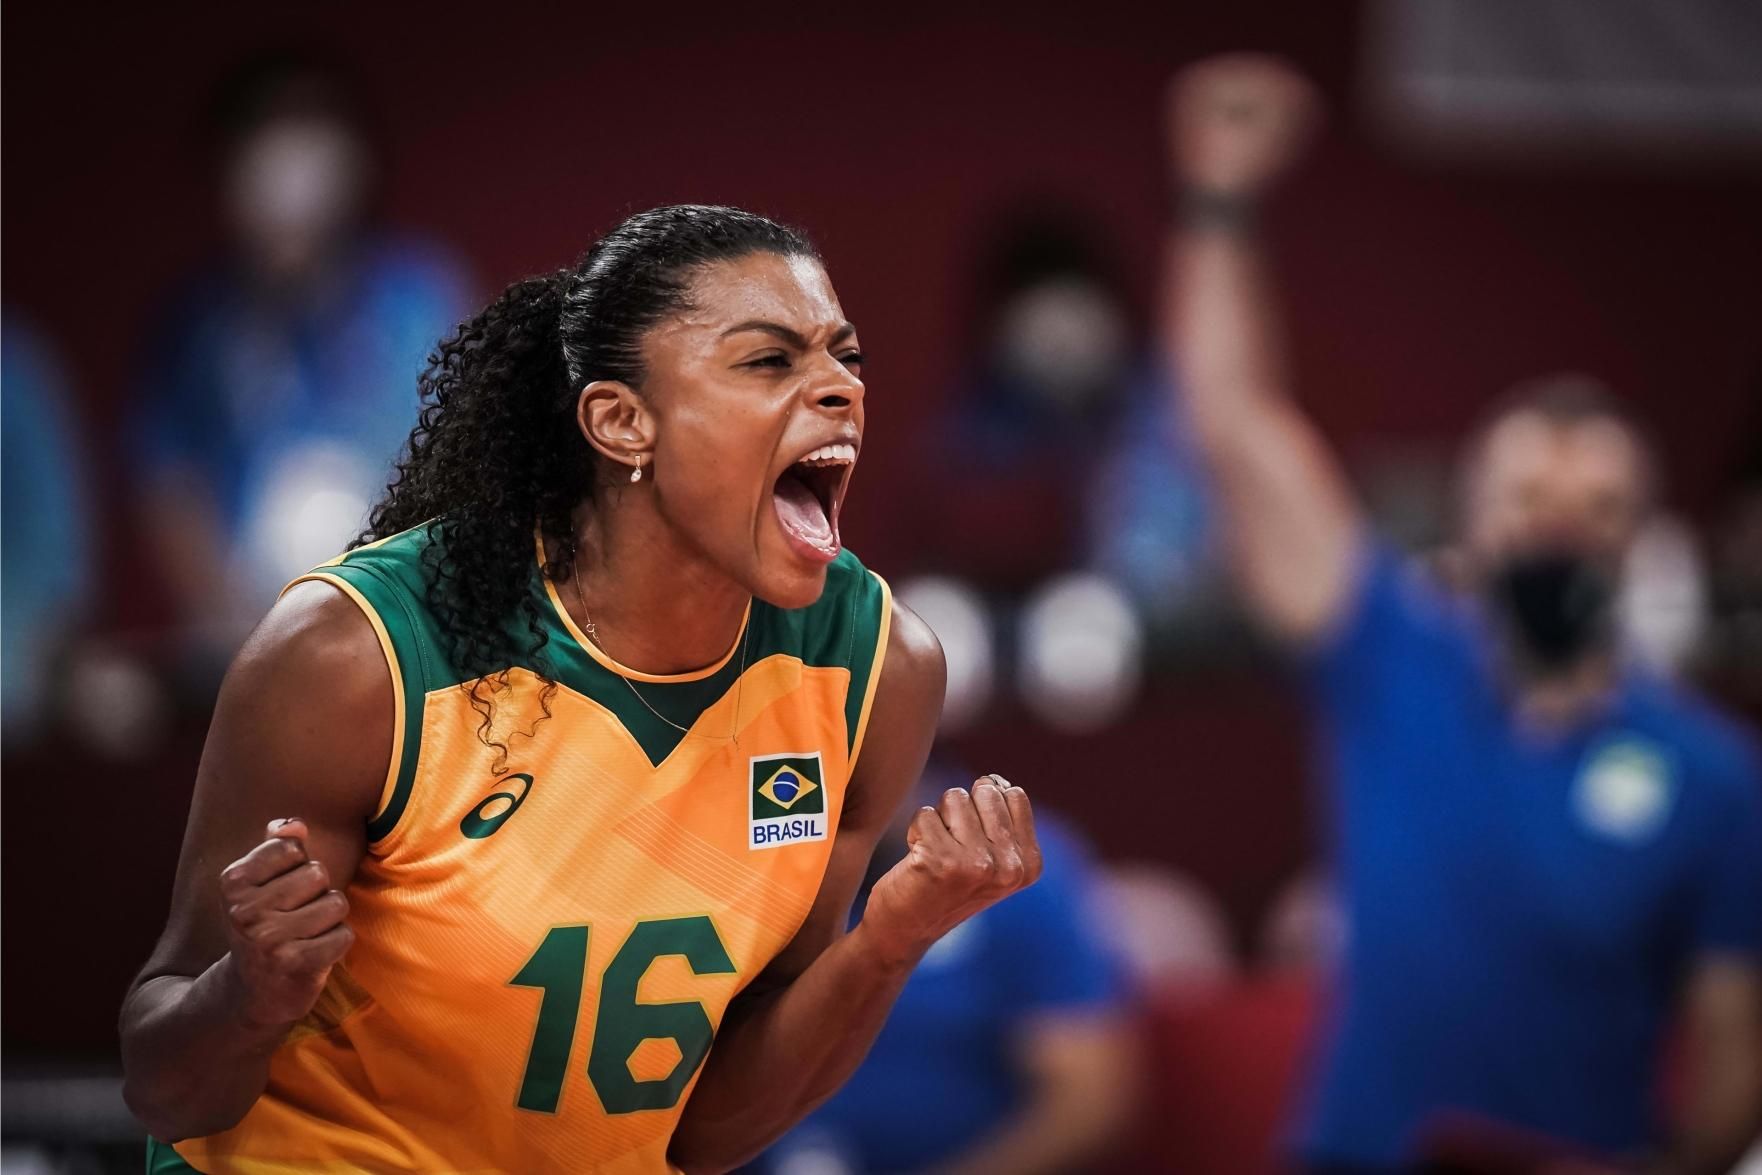 Brasil vence quarto jogo no vôlei feminino sem perder nenhum set